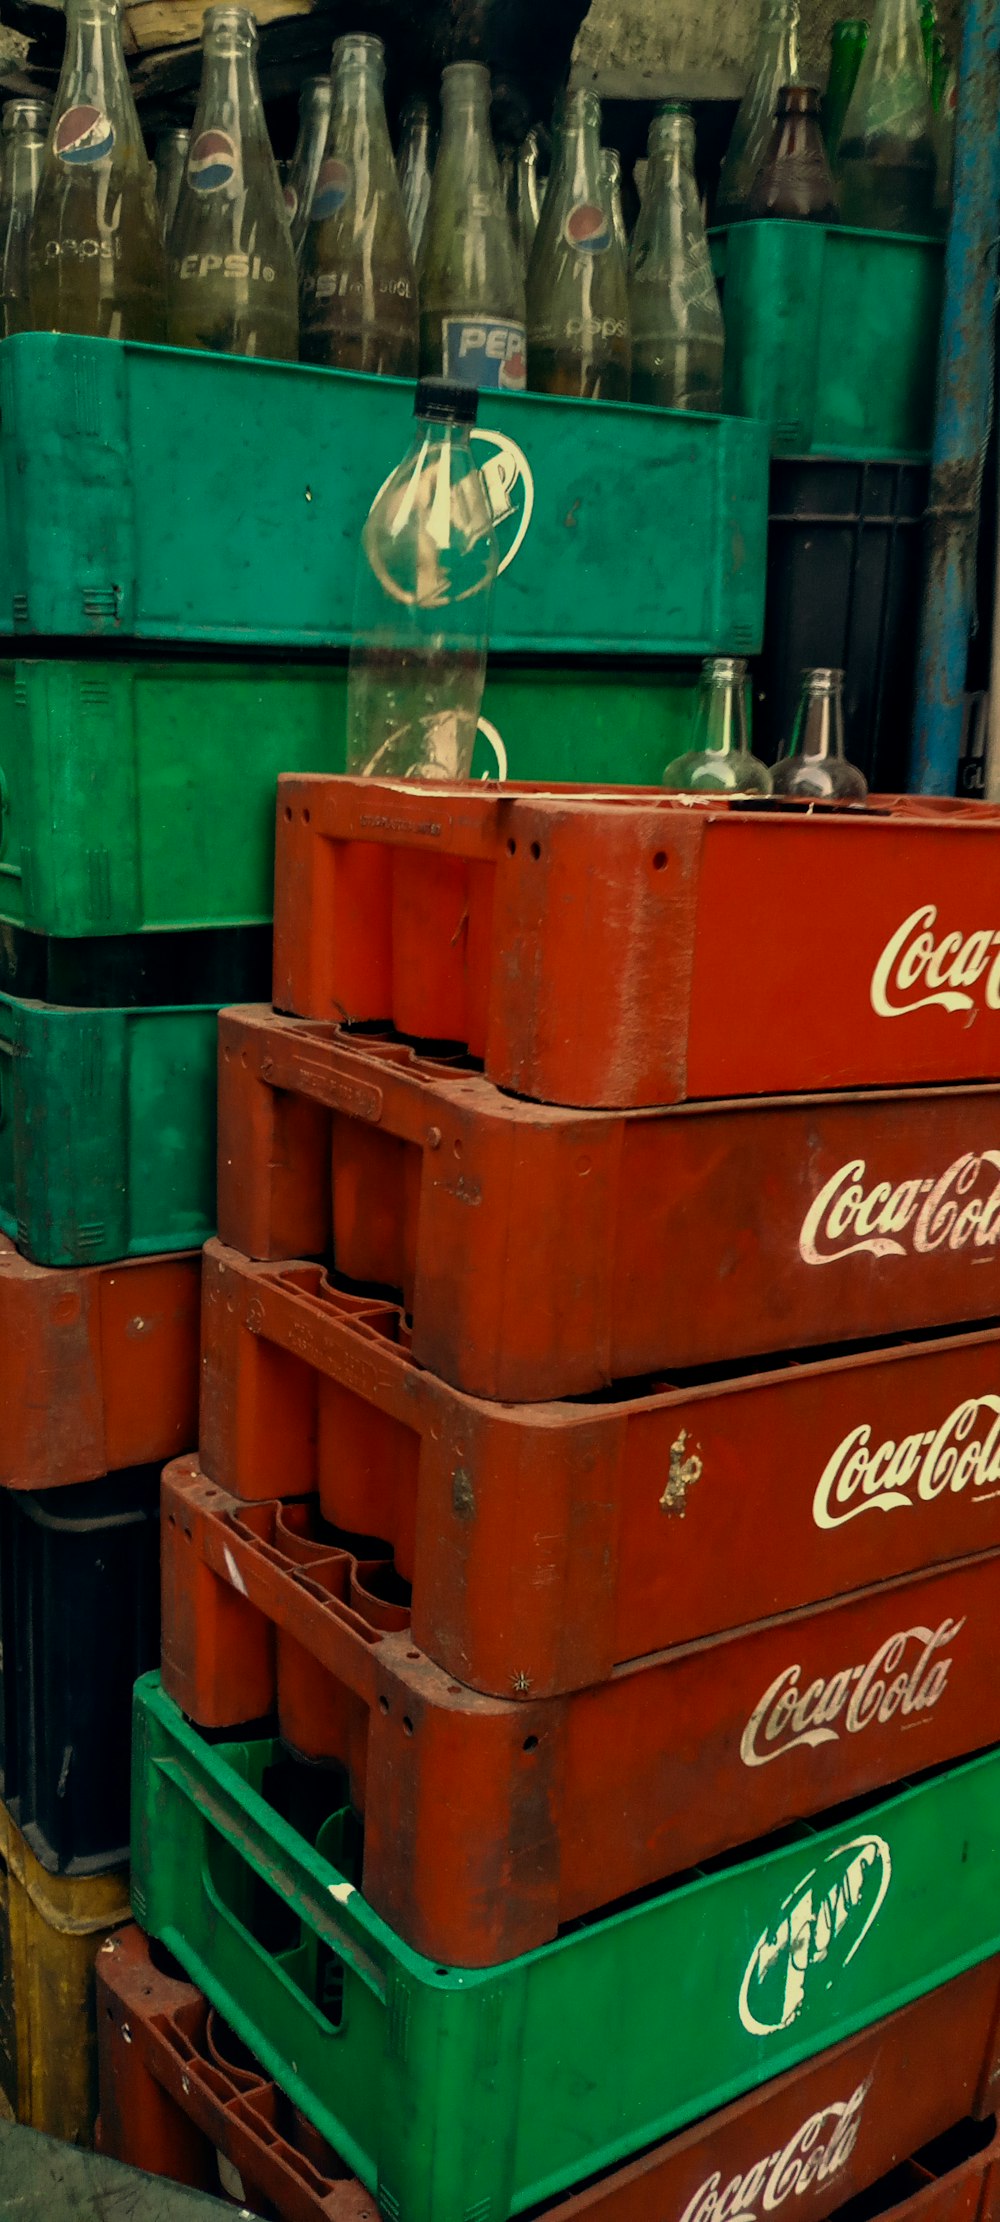 un tas de caisses de coca - cola empilées les unes sur les autres